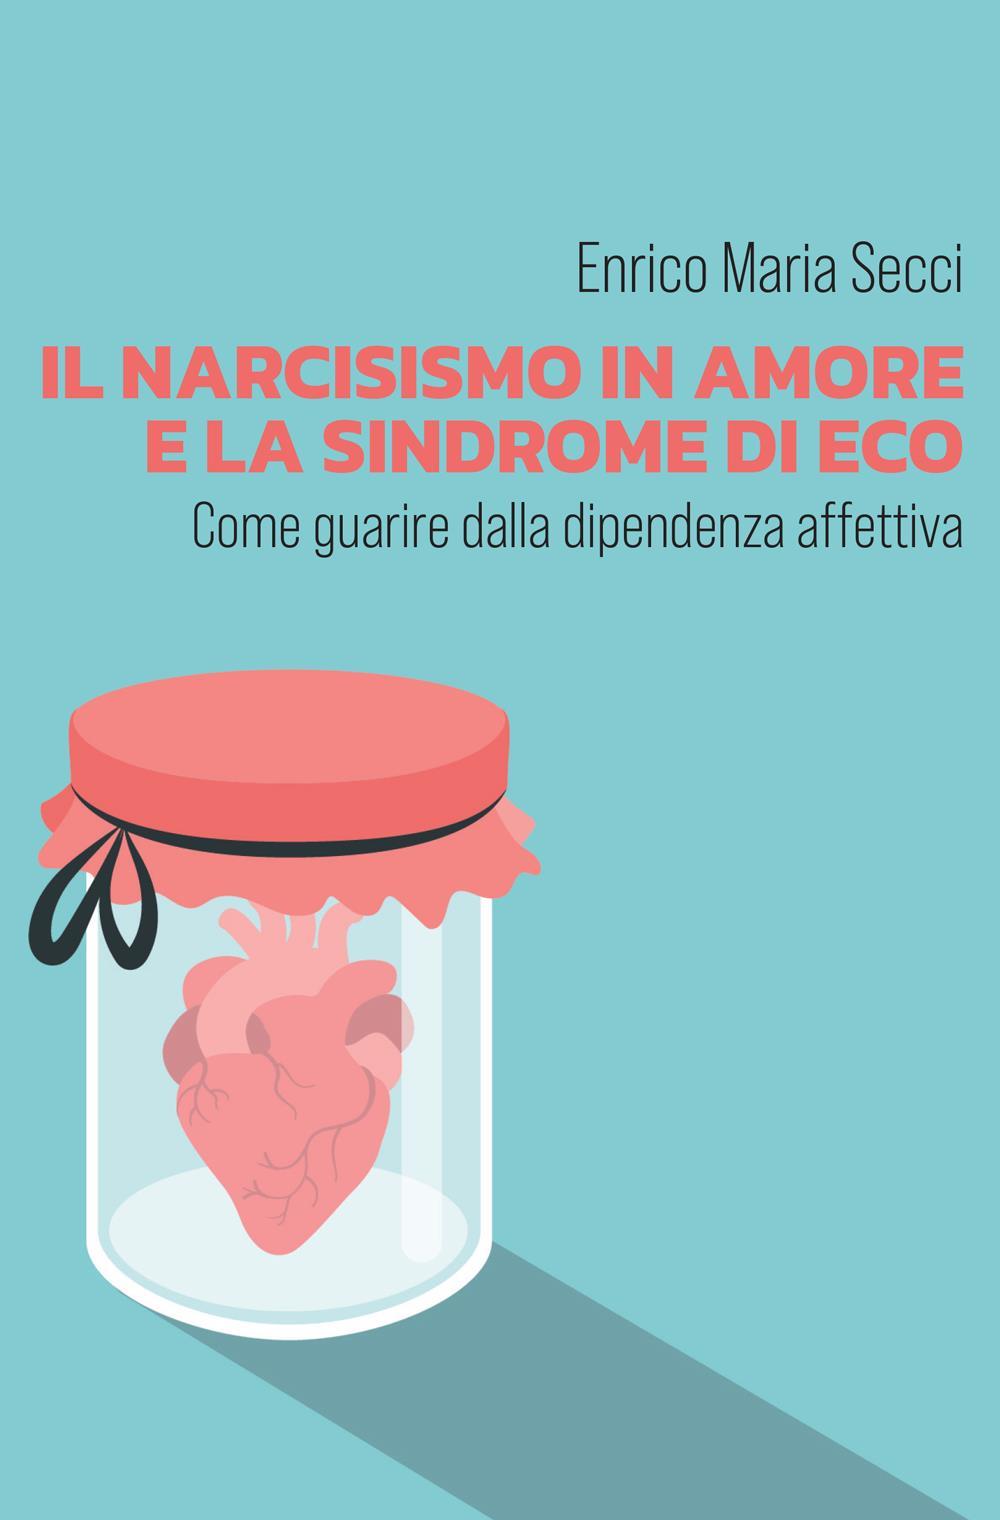 Il narcisismo in amore e la sindrome di Eco - Come guarire dalla dipendenza affettiva